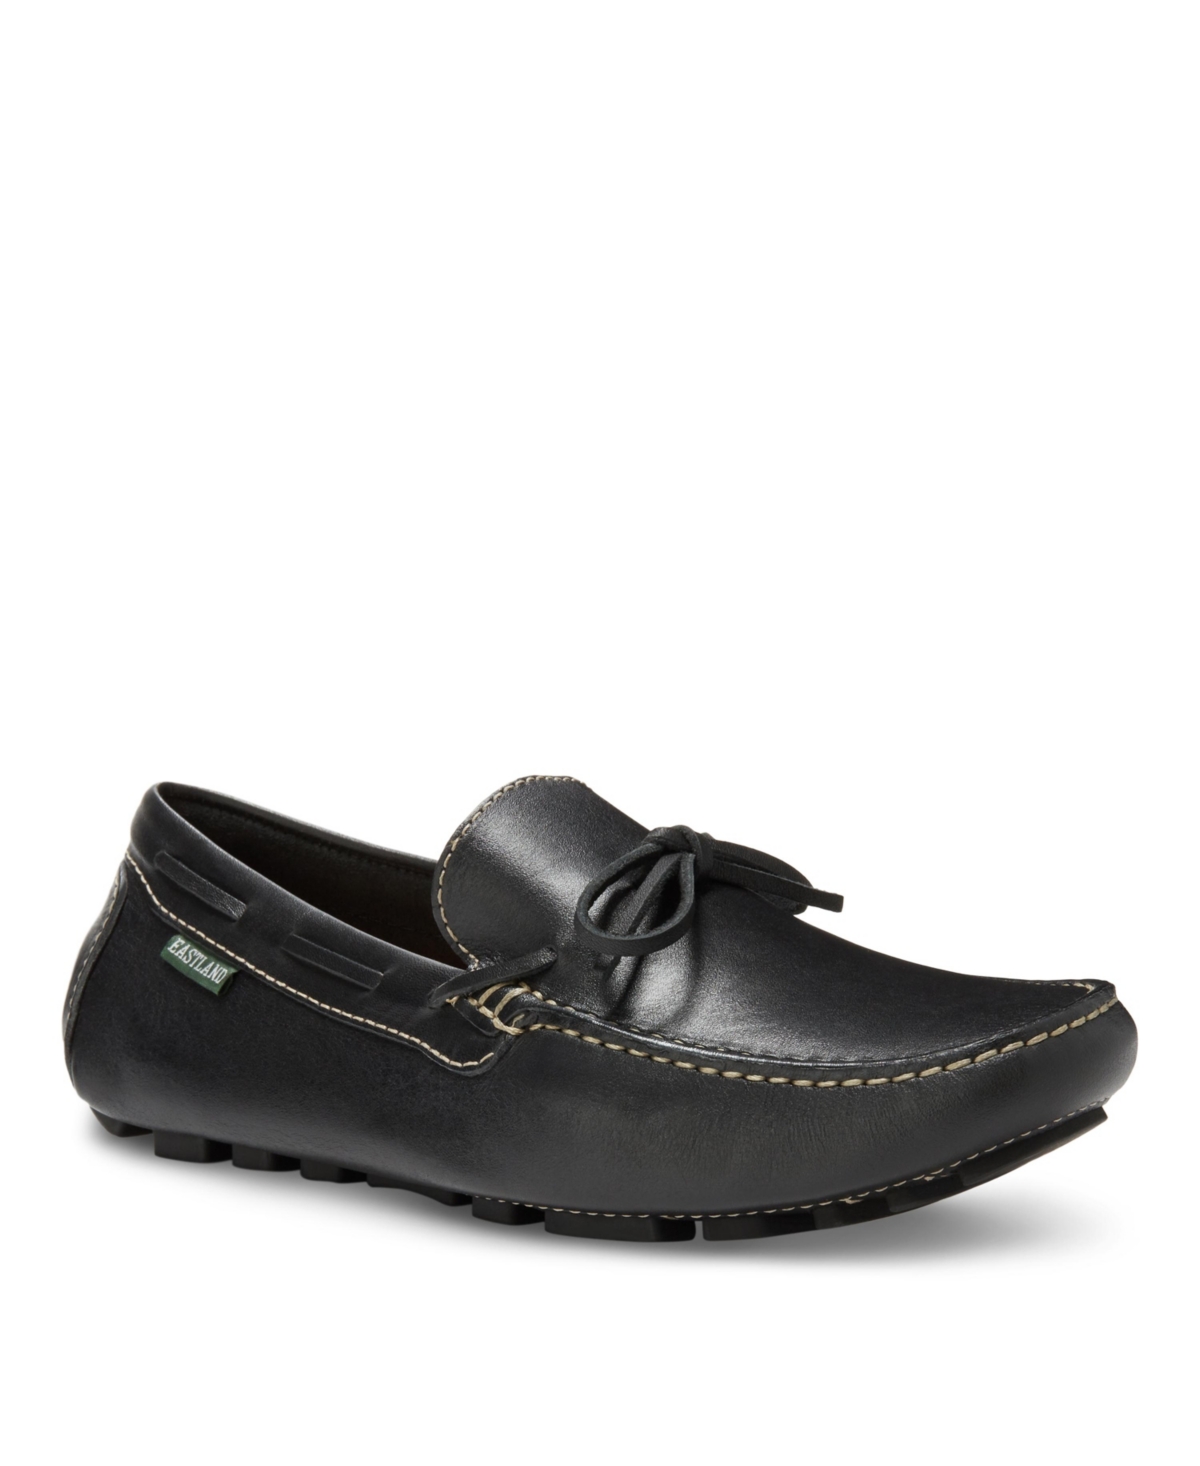 Men's Dustin Driving Moc Loafer Shoes - Black